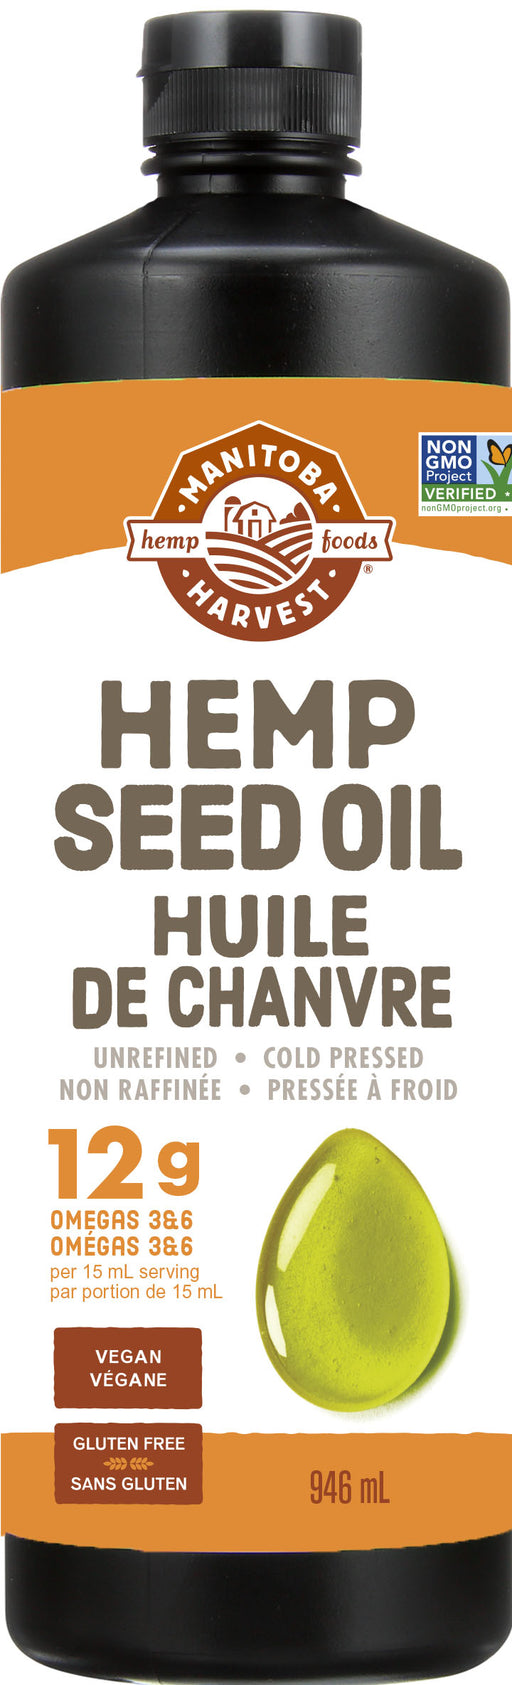 Manitoba Harvest - Hemp Seed Oil, 946ml